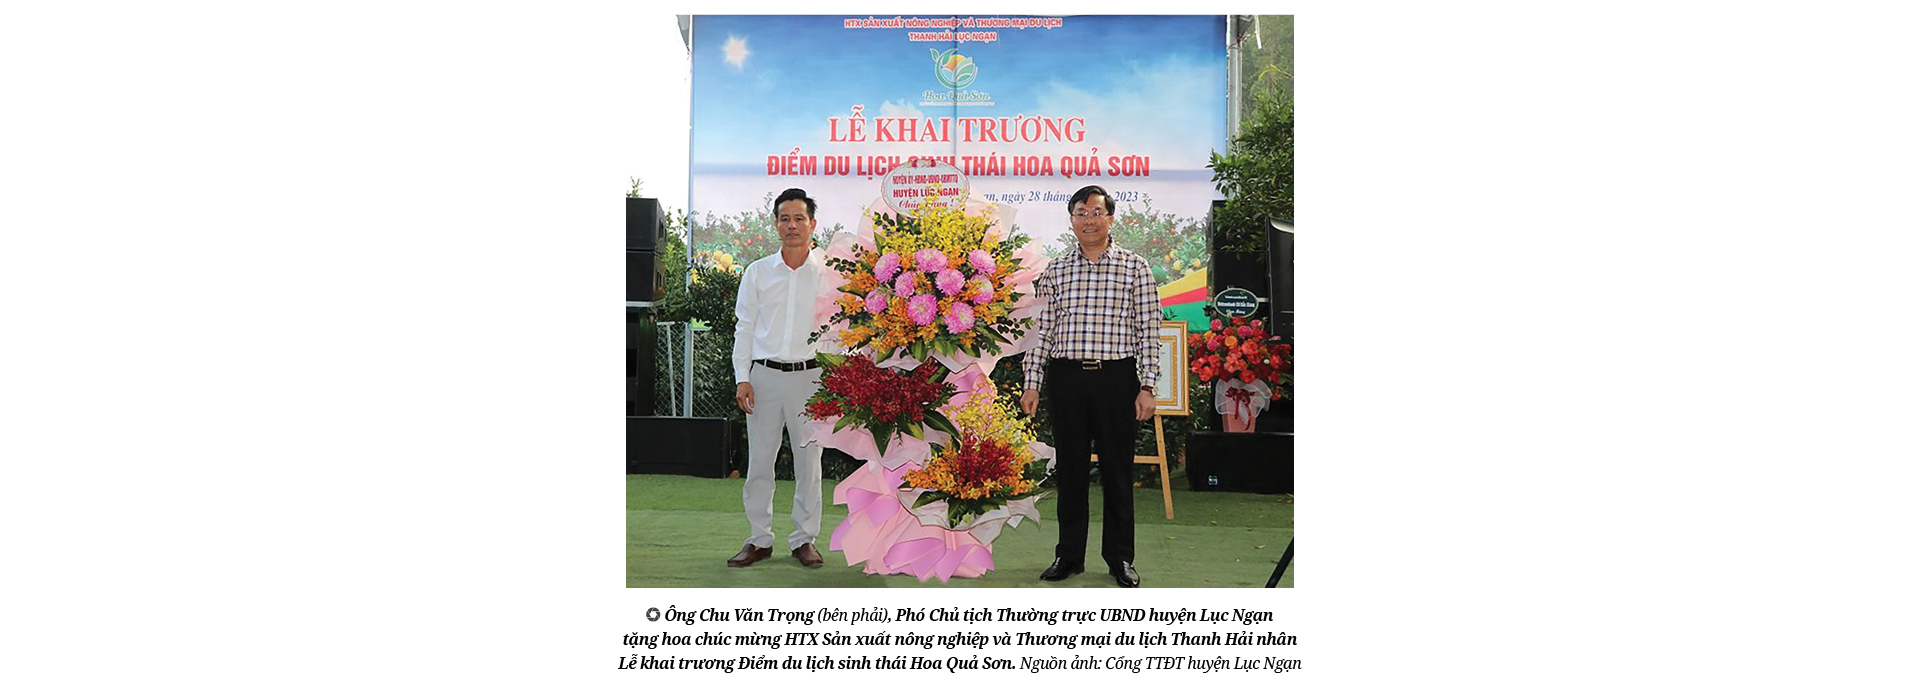 Nông dân Việt Nam xuất sắc Nguyễn Văn Hữu: "Cãi" cả họ phá vải thiều trồng bưởi và khu vườn hạnh phúc- Ảnh 7.